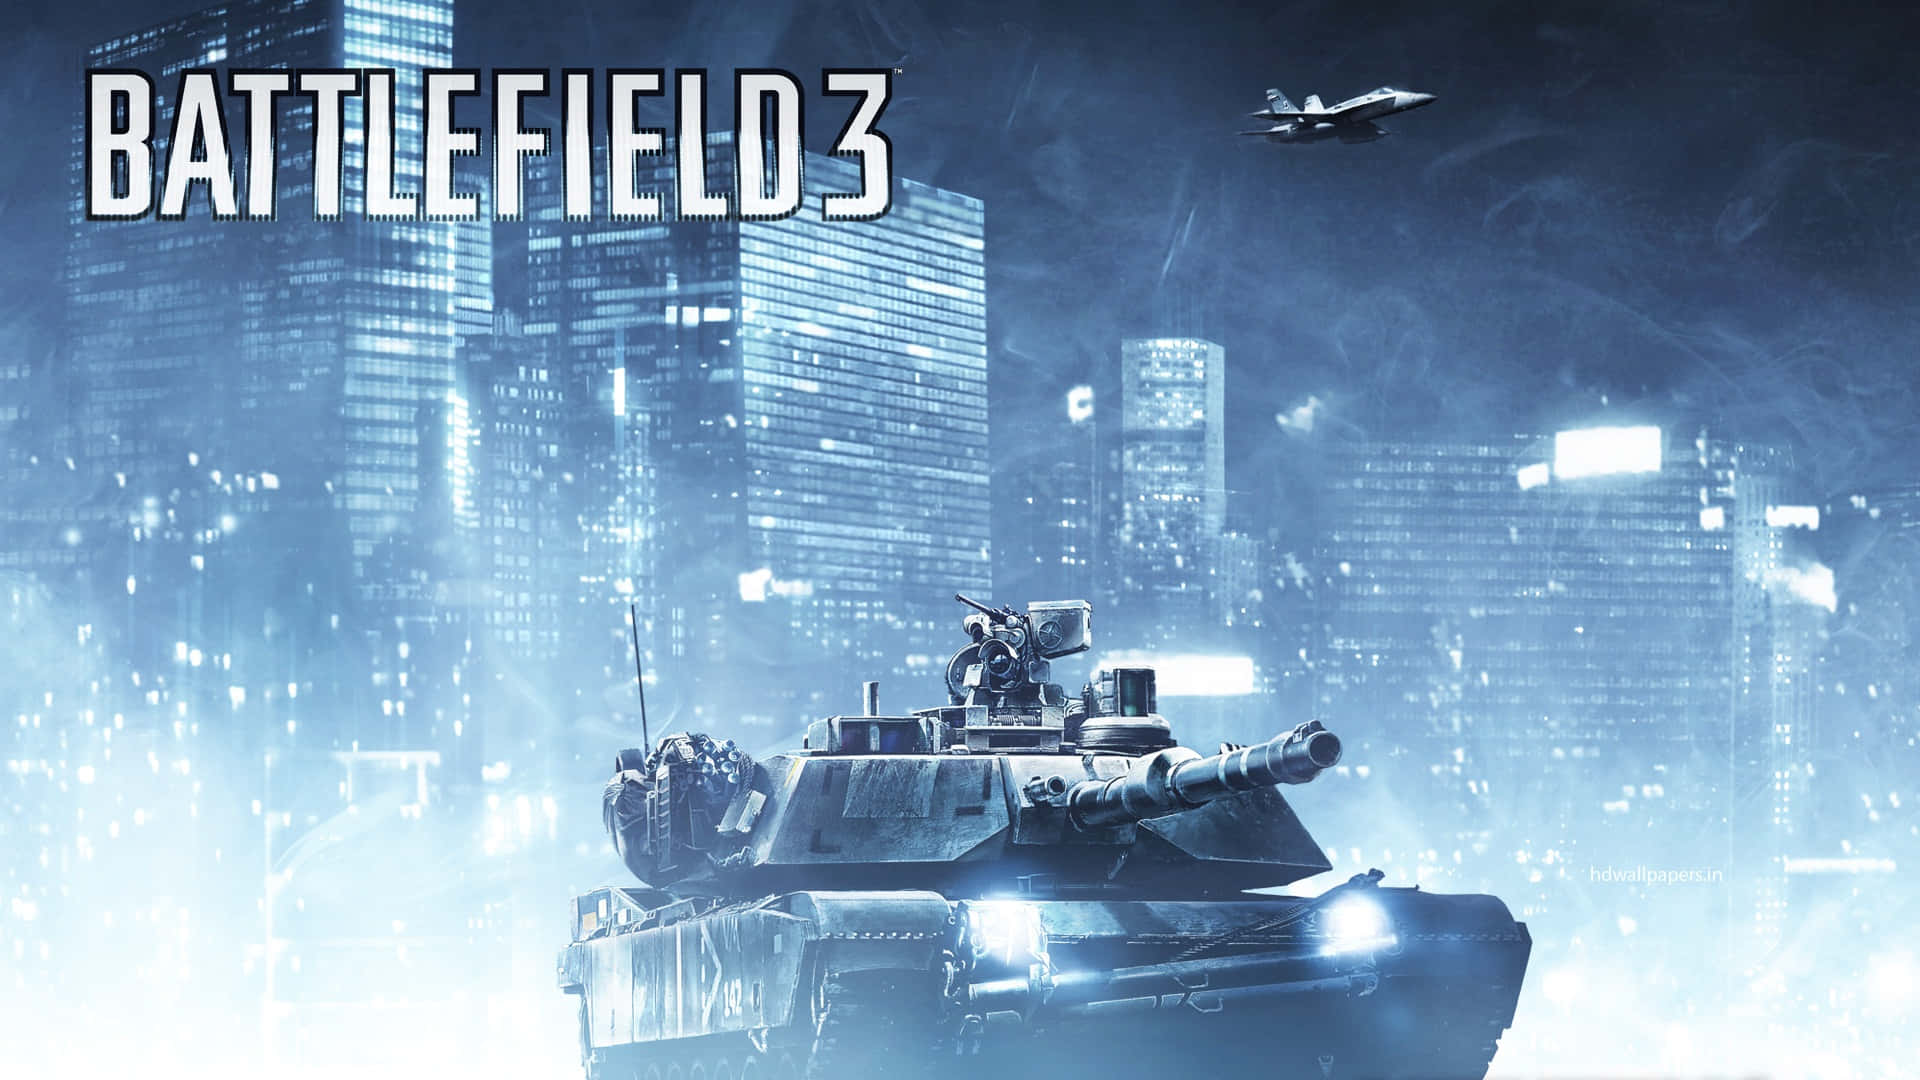 Battlefield3 Desktophintergrund Mit Logo Eines Panzers. Wallpaper